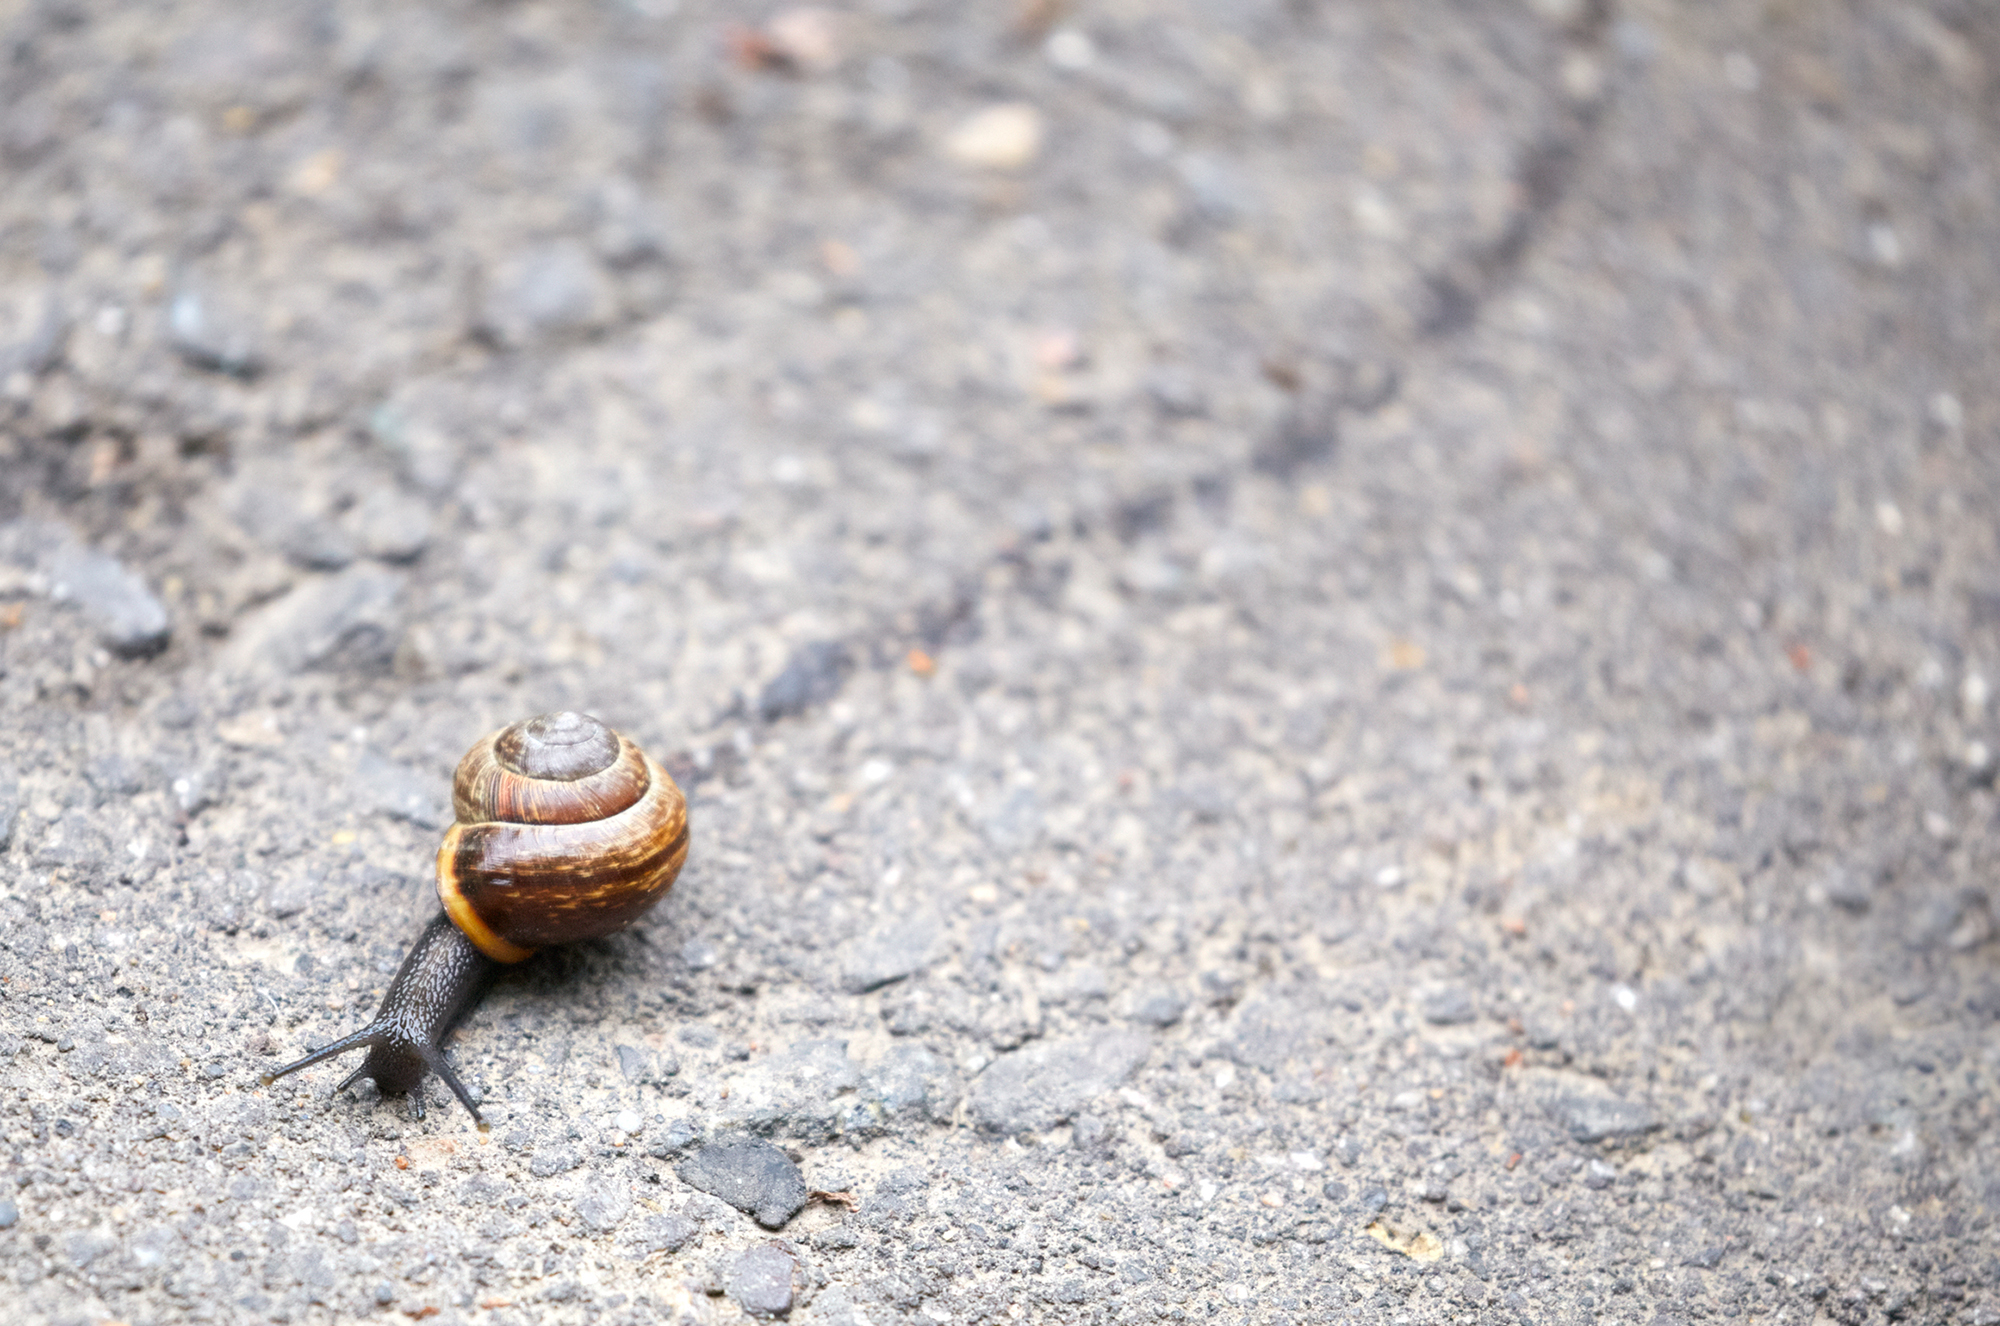 snail mucus trail.